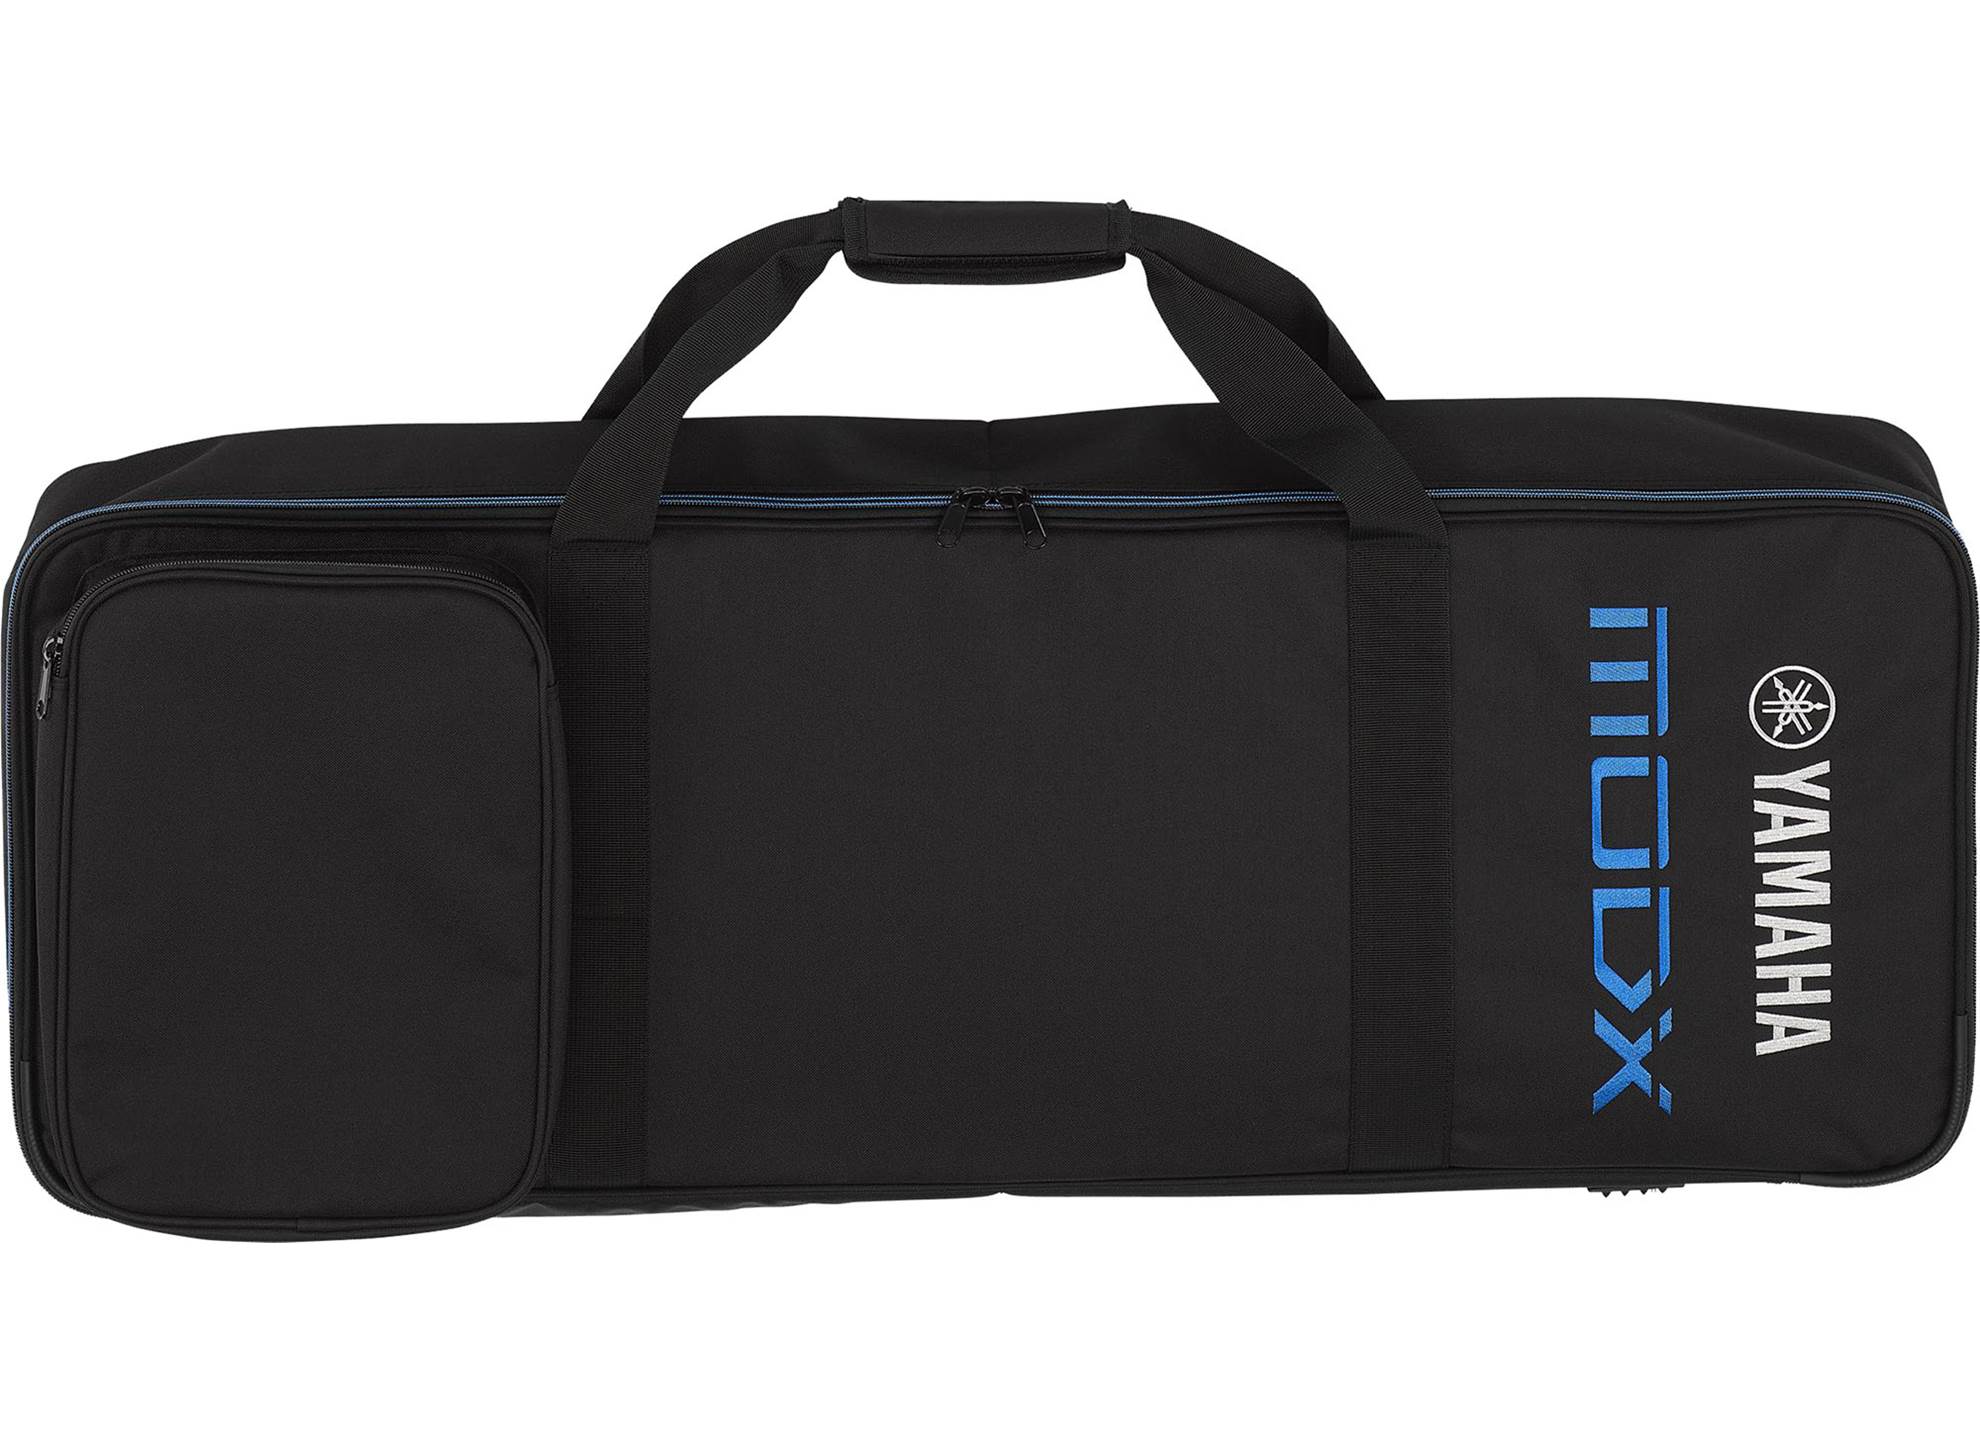 SC-MODX6 Bag